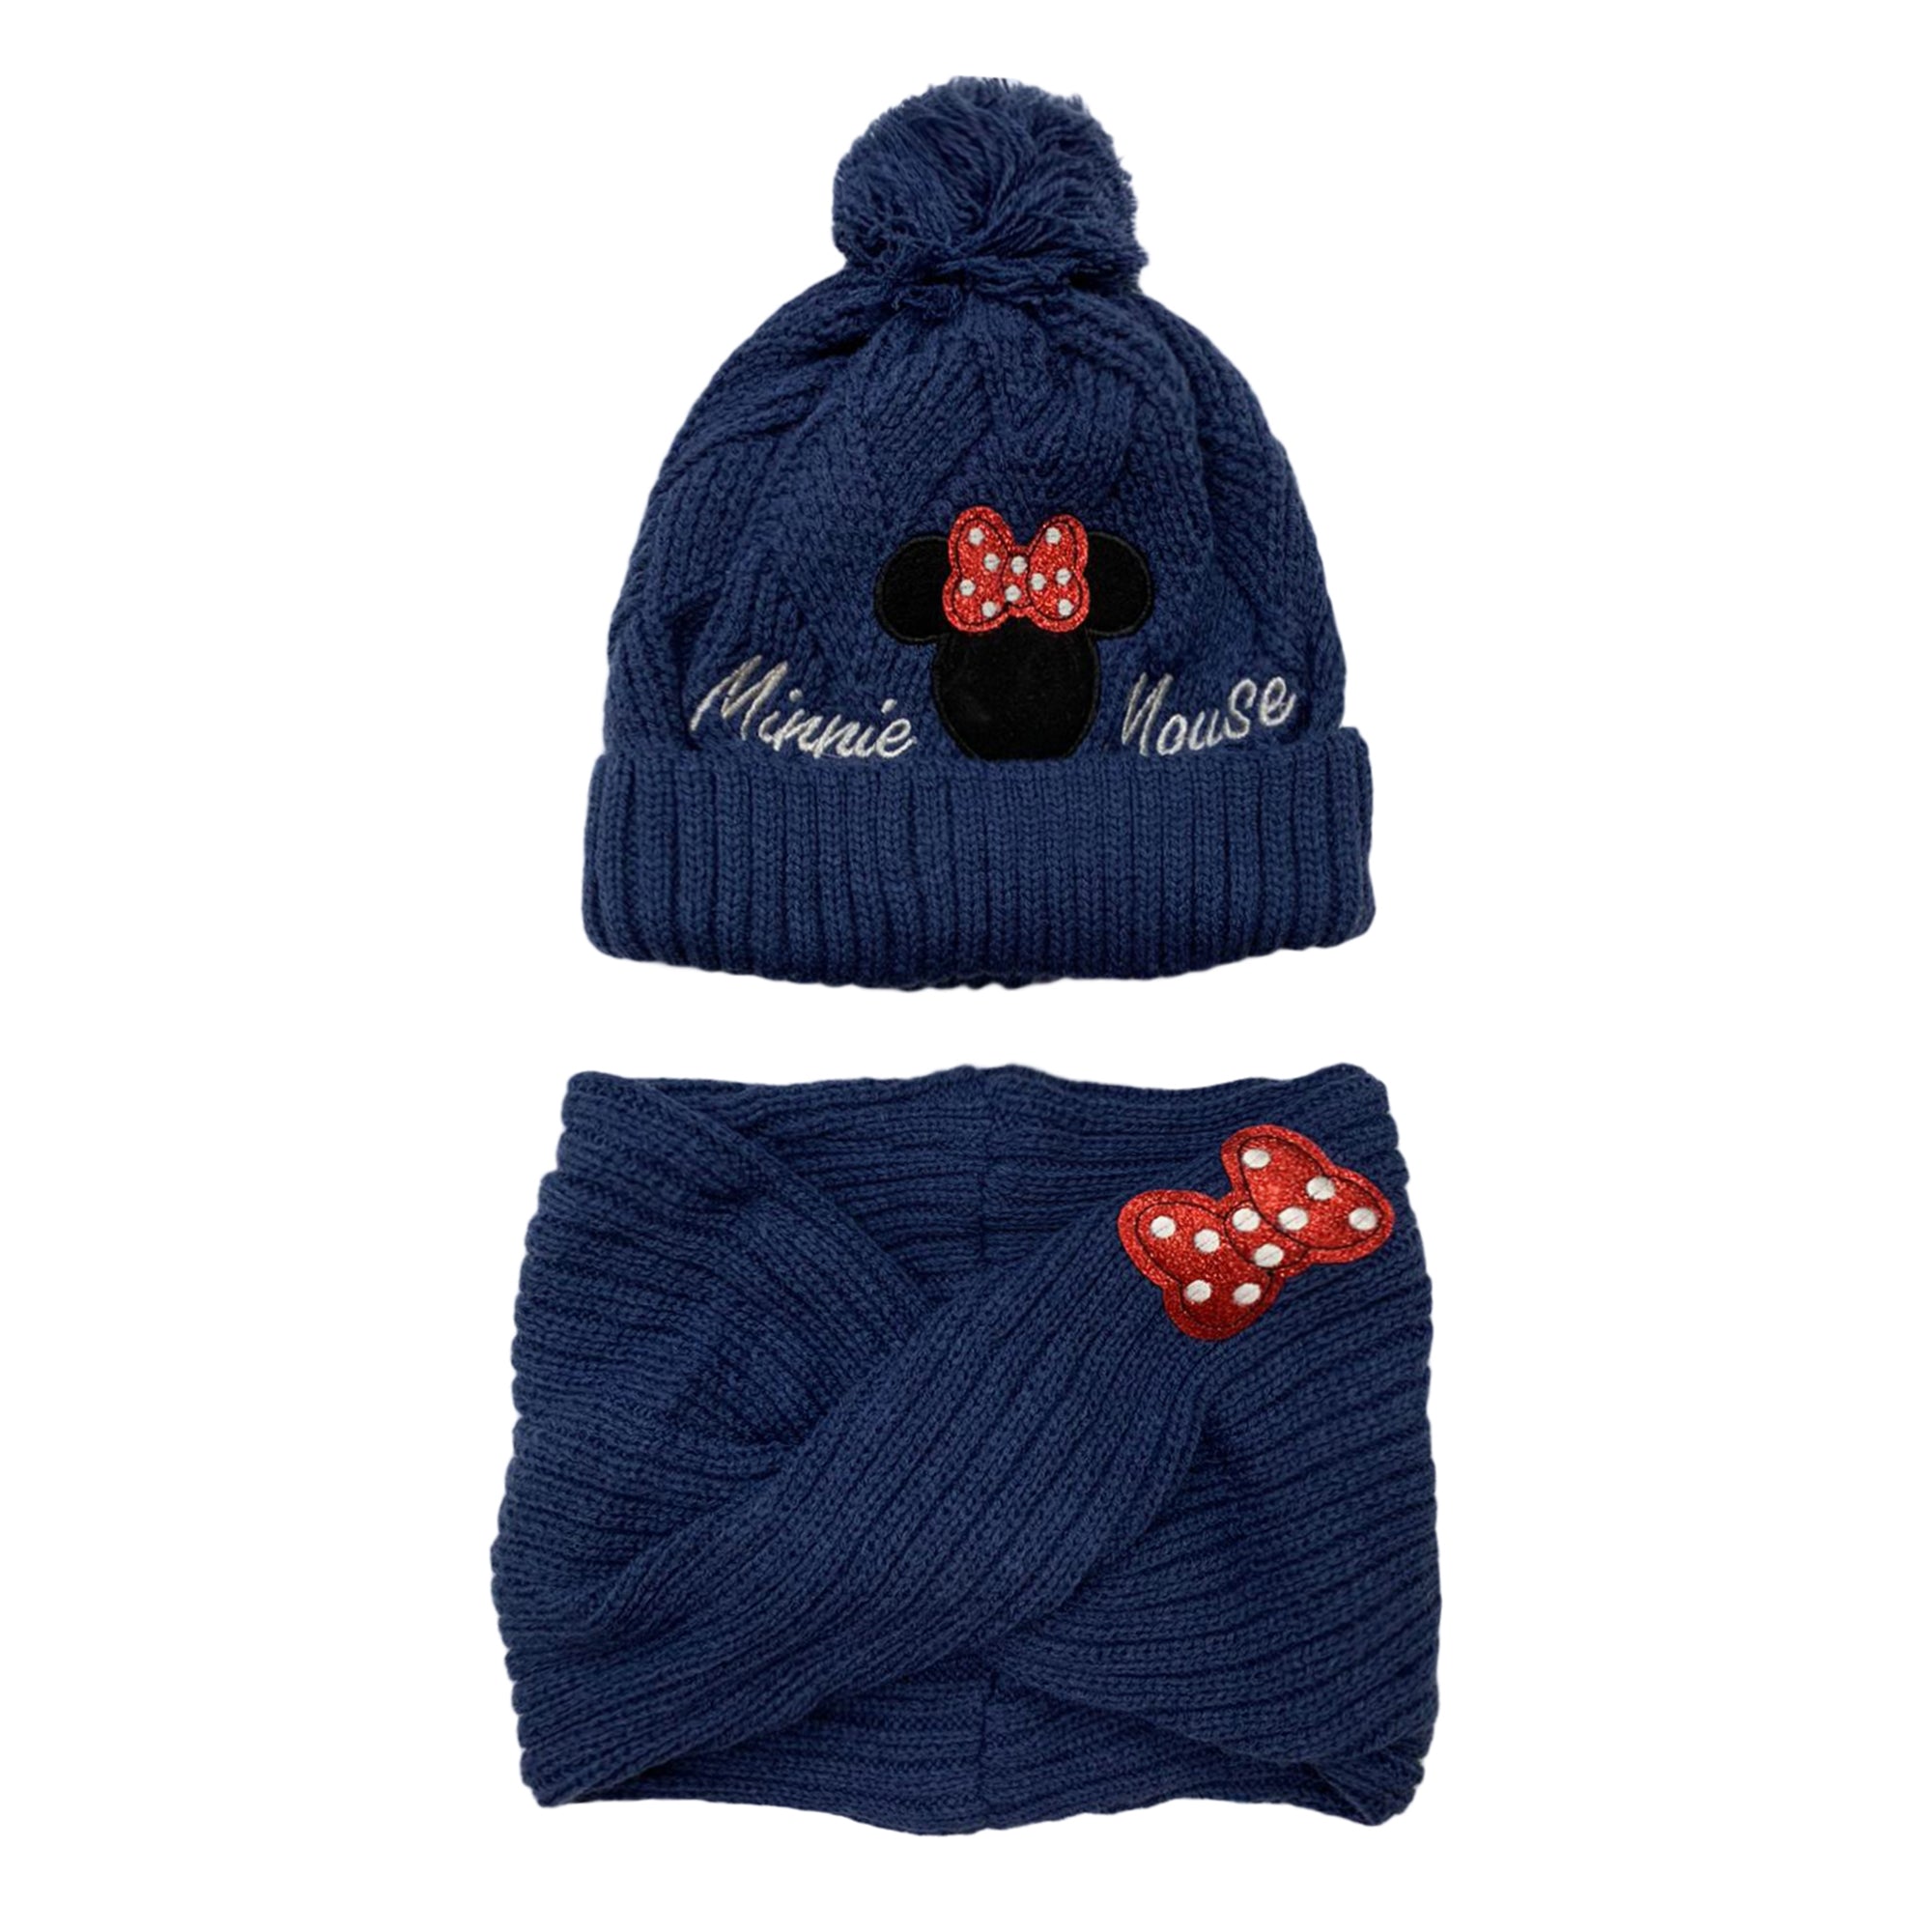 Cappello e scaldacollo invernale Disney Minnie Pon Pon cappellino bambina 3403